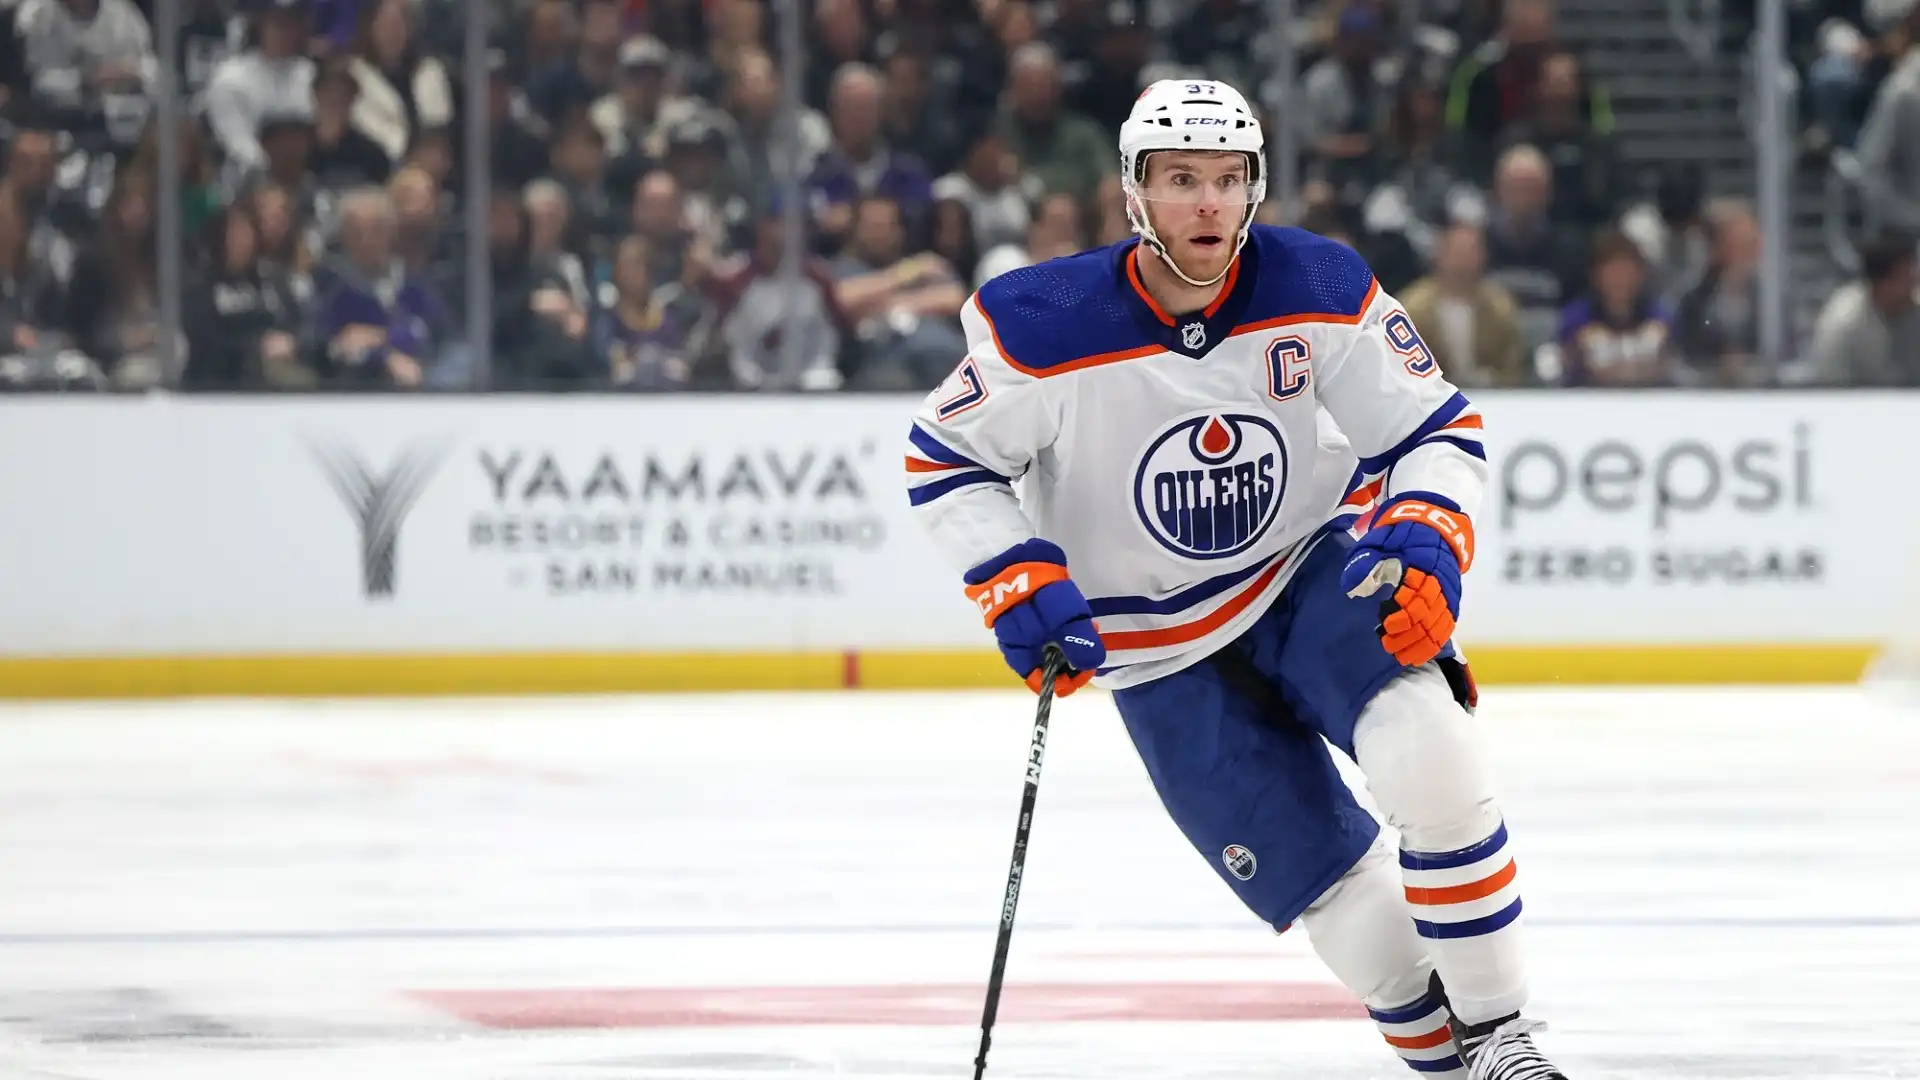 Connor McDavid (NHL, Edmonton Oilers): 15 milioni di dollari all'anno